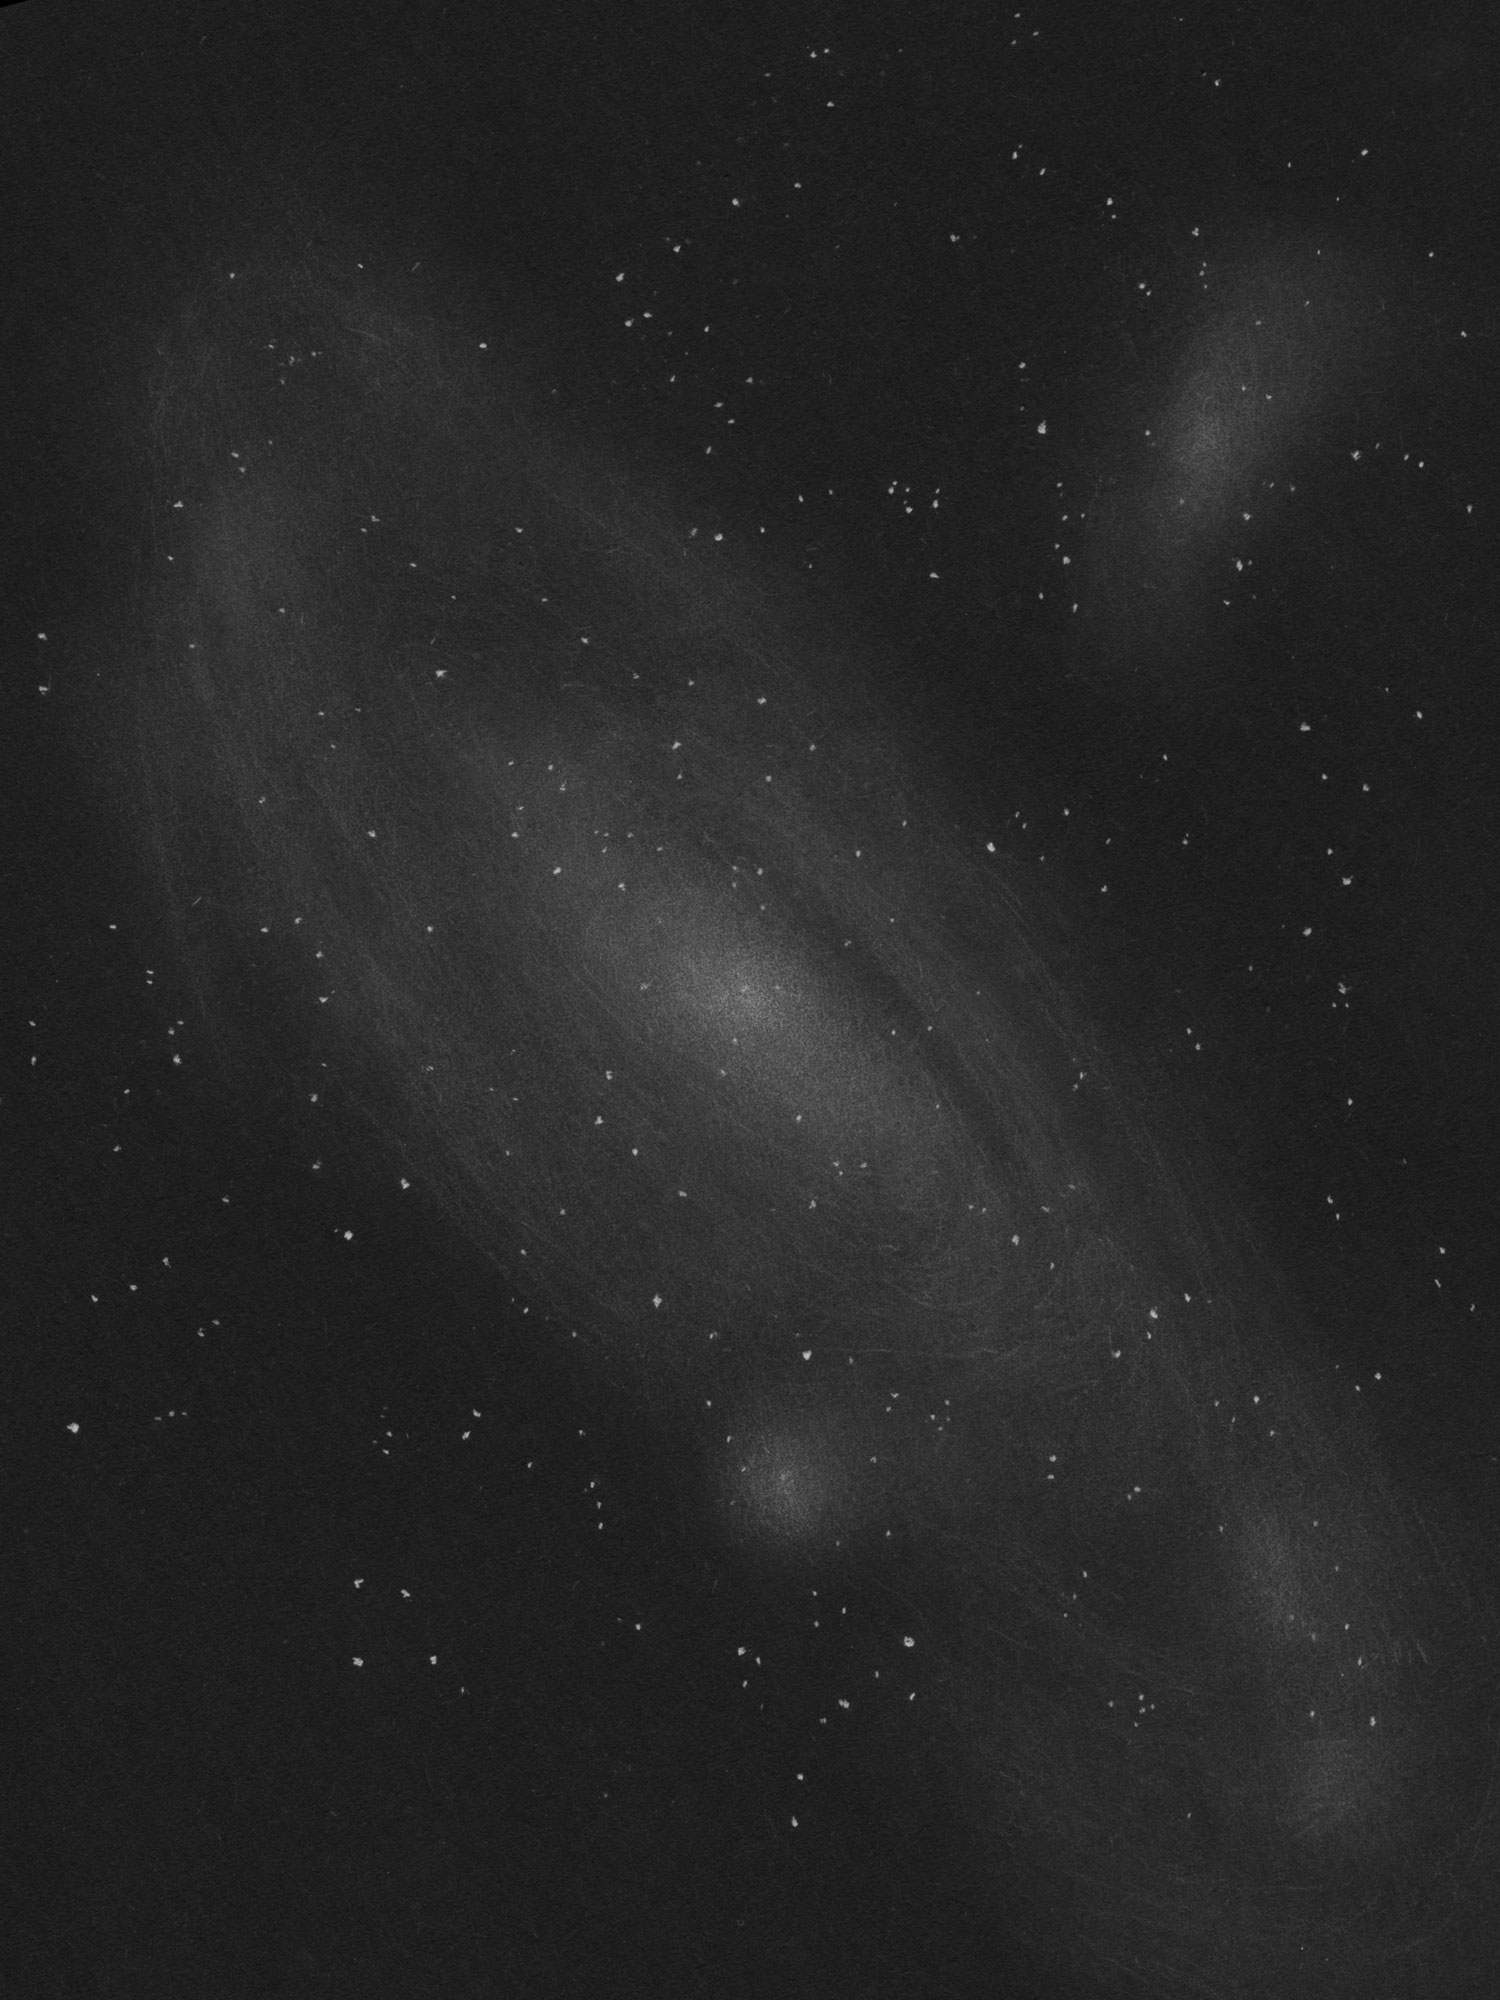 M31アンドロメダ銀河のスケッチ